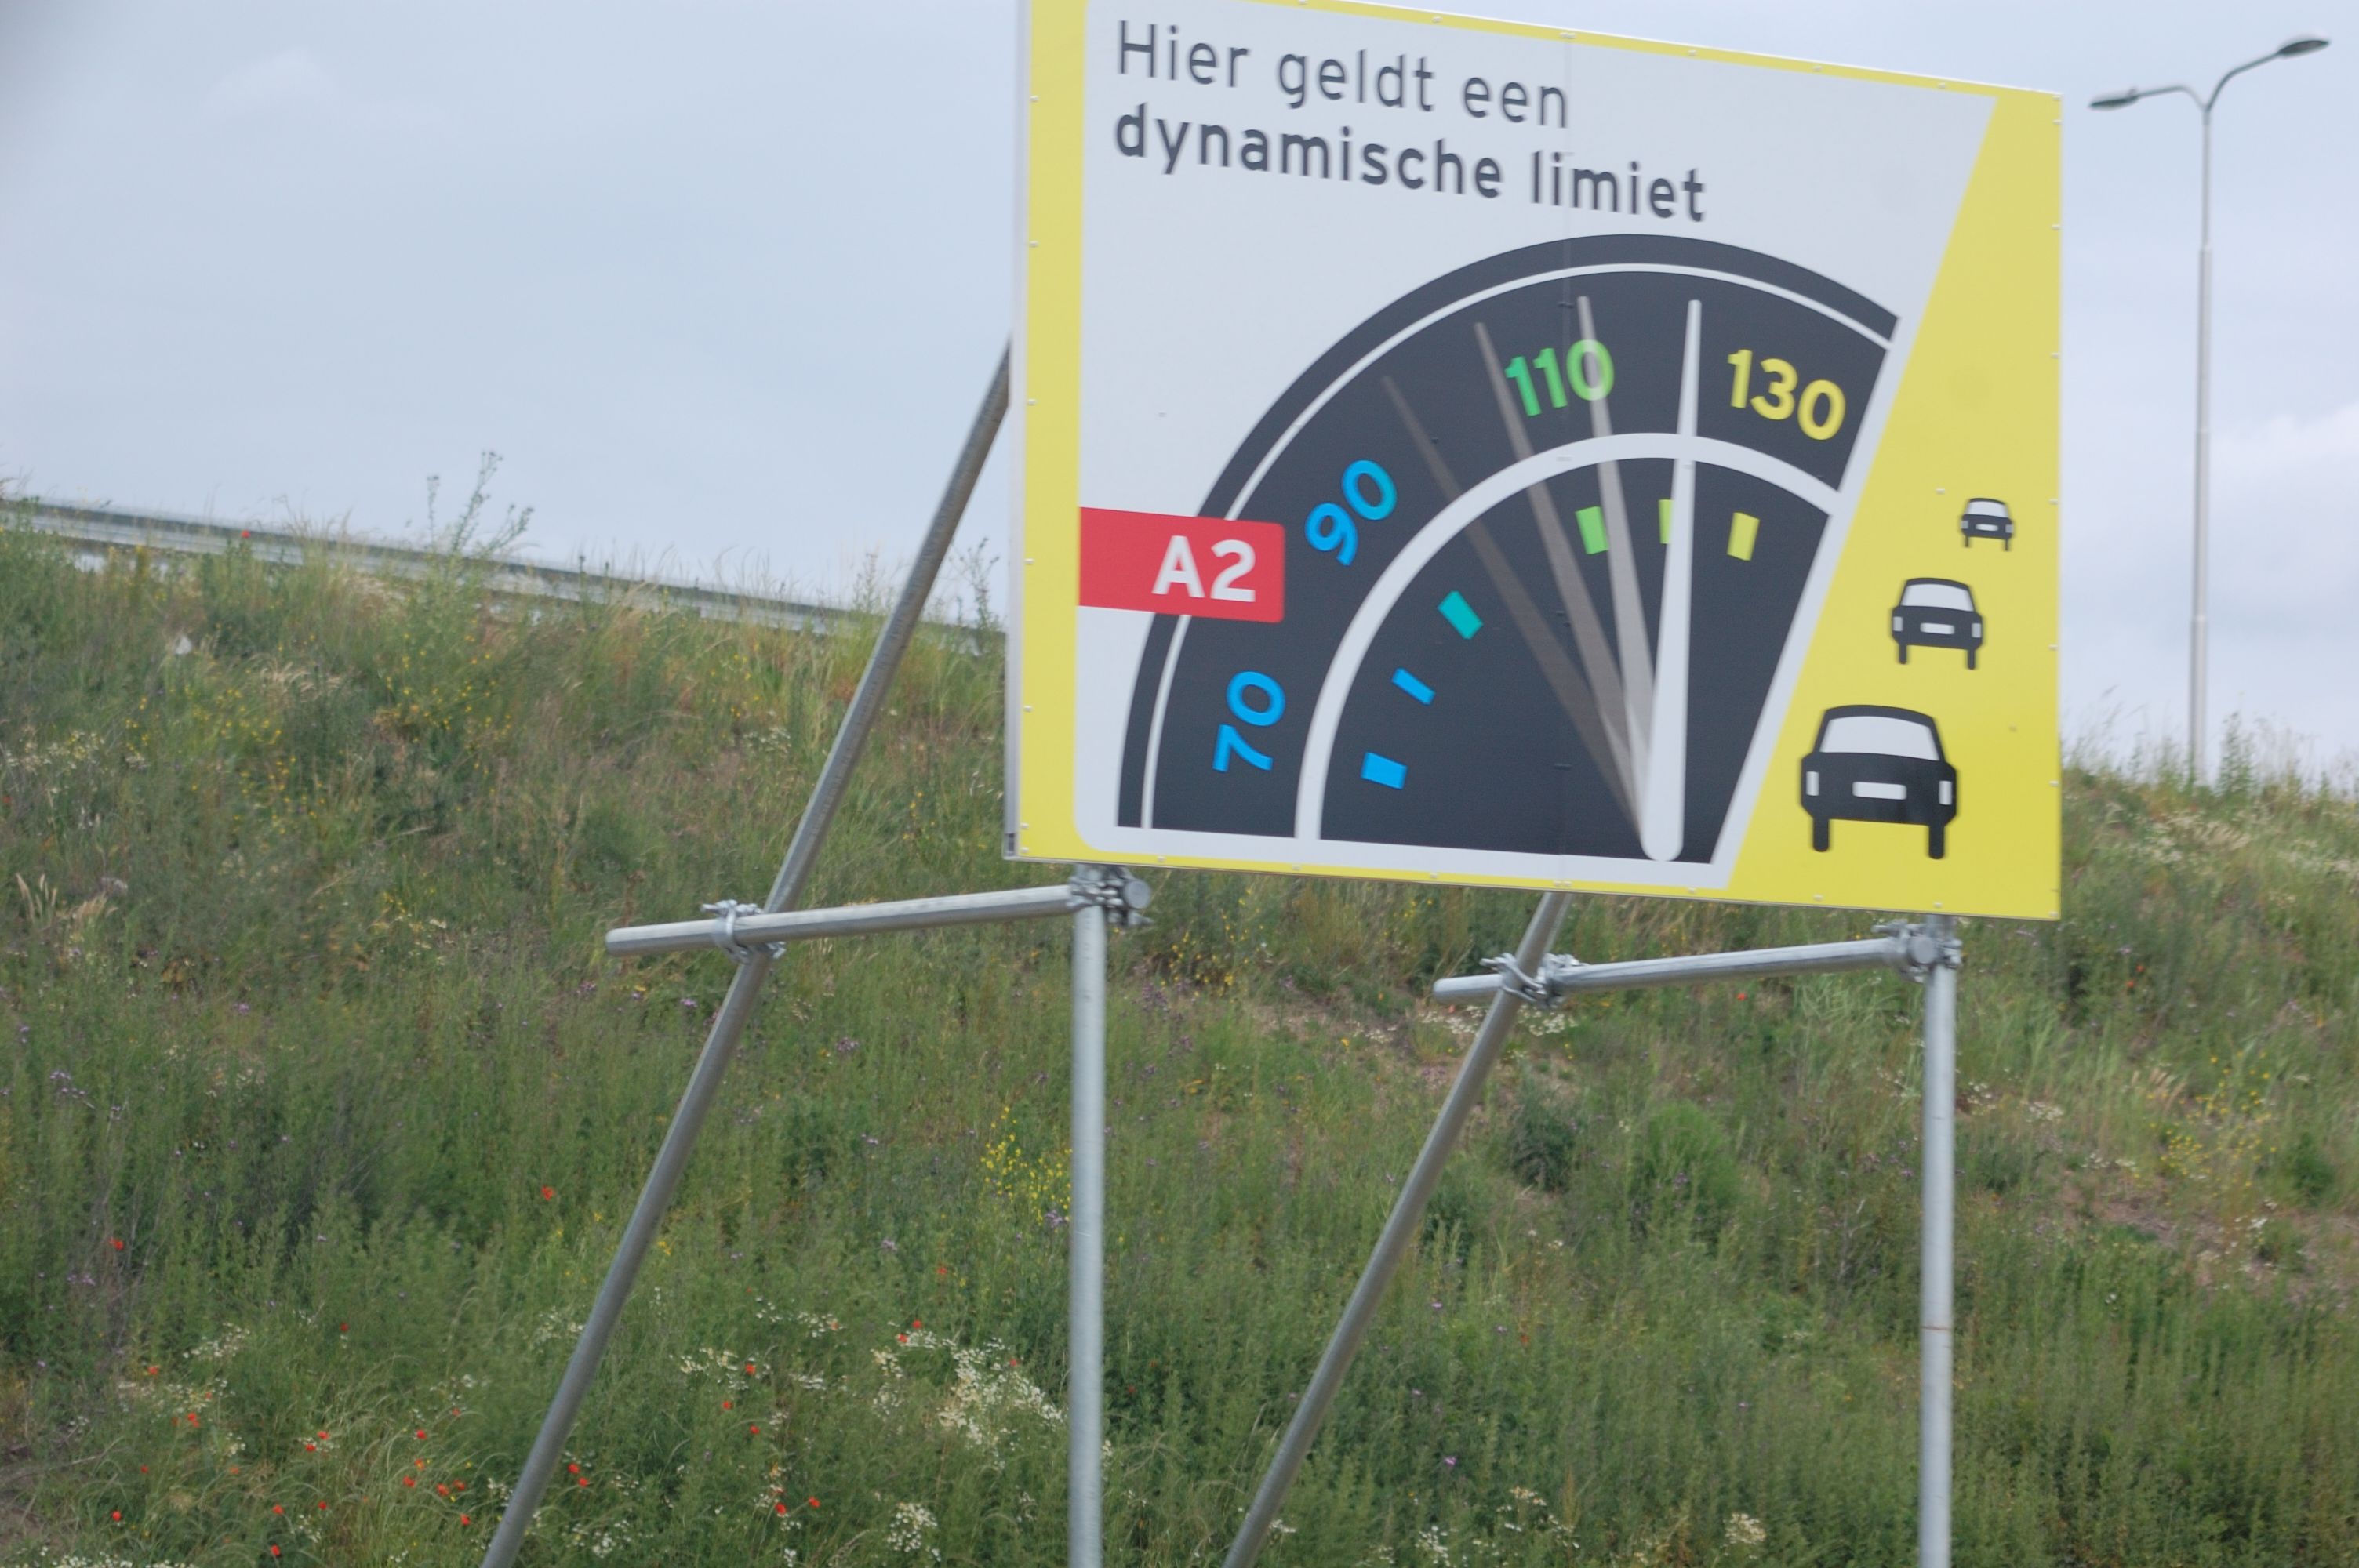 20110528-105214.JPG - Mottobord op de toerit Geldermalsen in de richting Utrecht, enkele dagen voor de start van de proef met dynamische snelheidslimieten tot 130 km/uur.